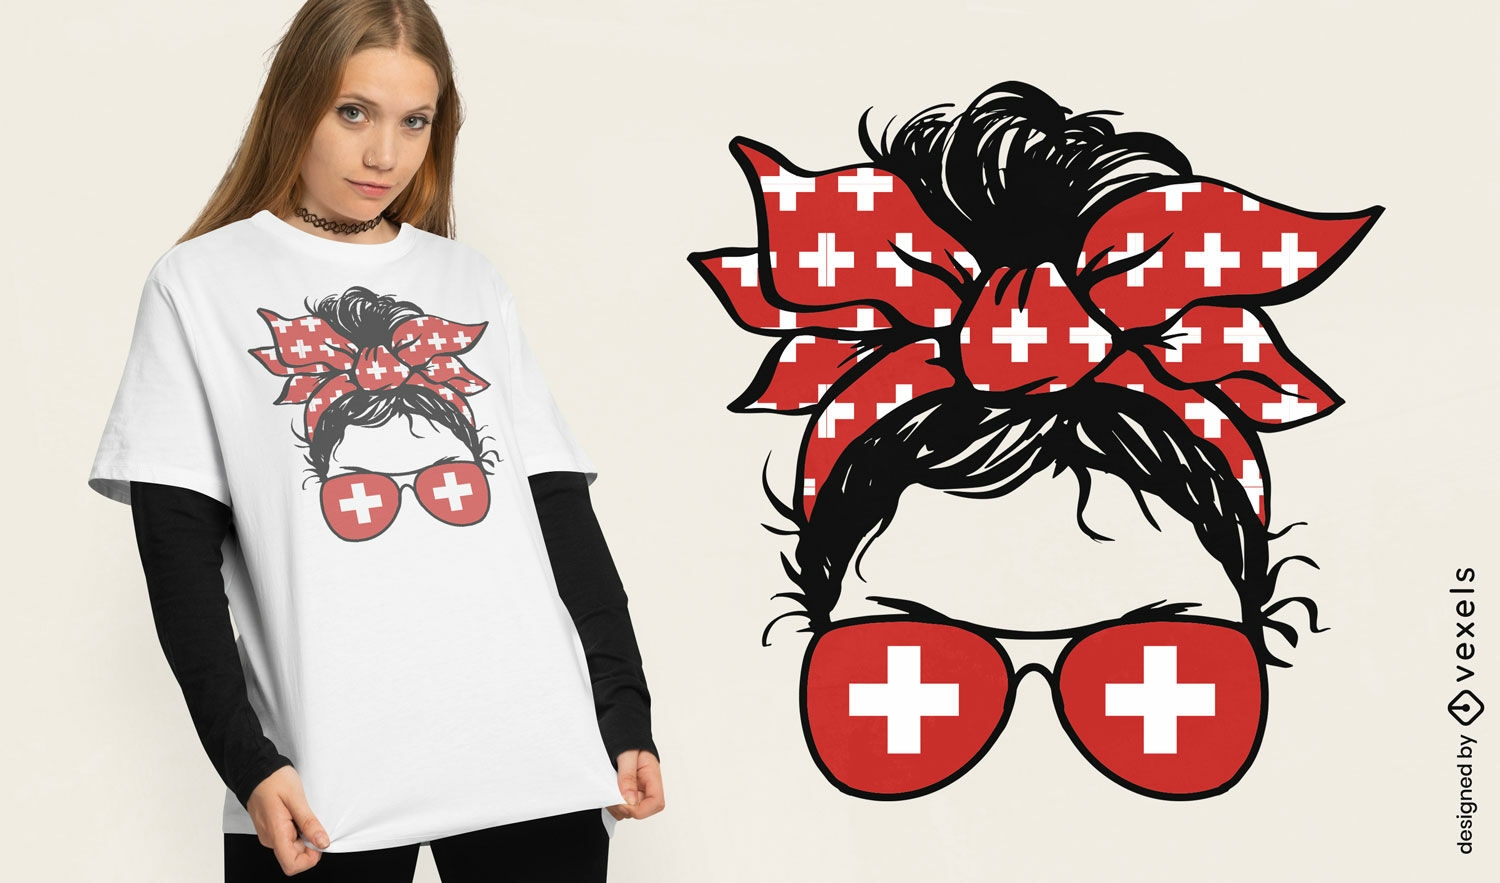 Diseño de camiseta de accesorios de inspiración suiza.